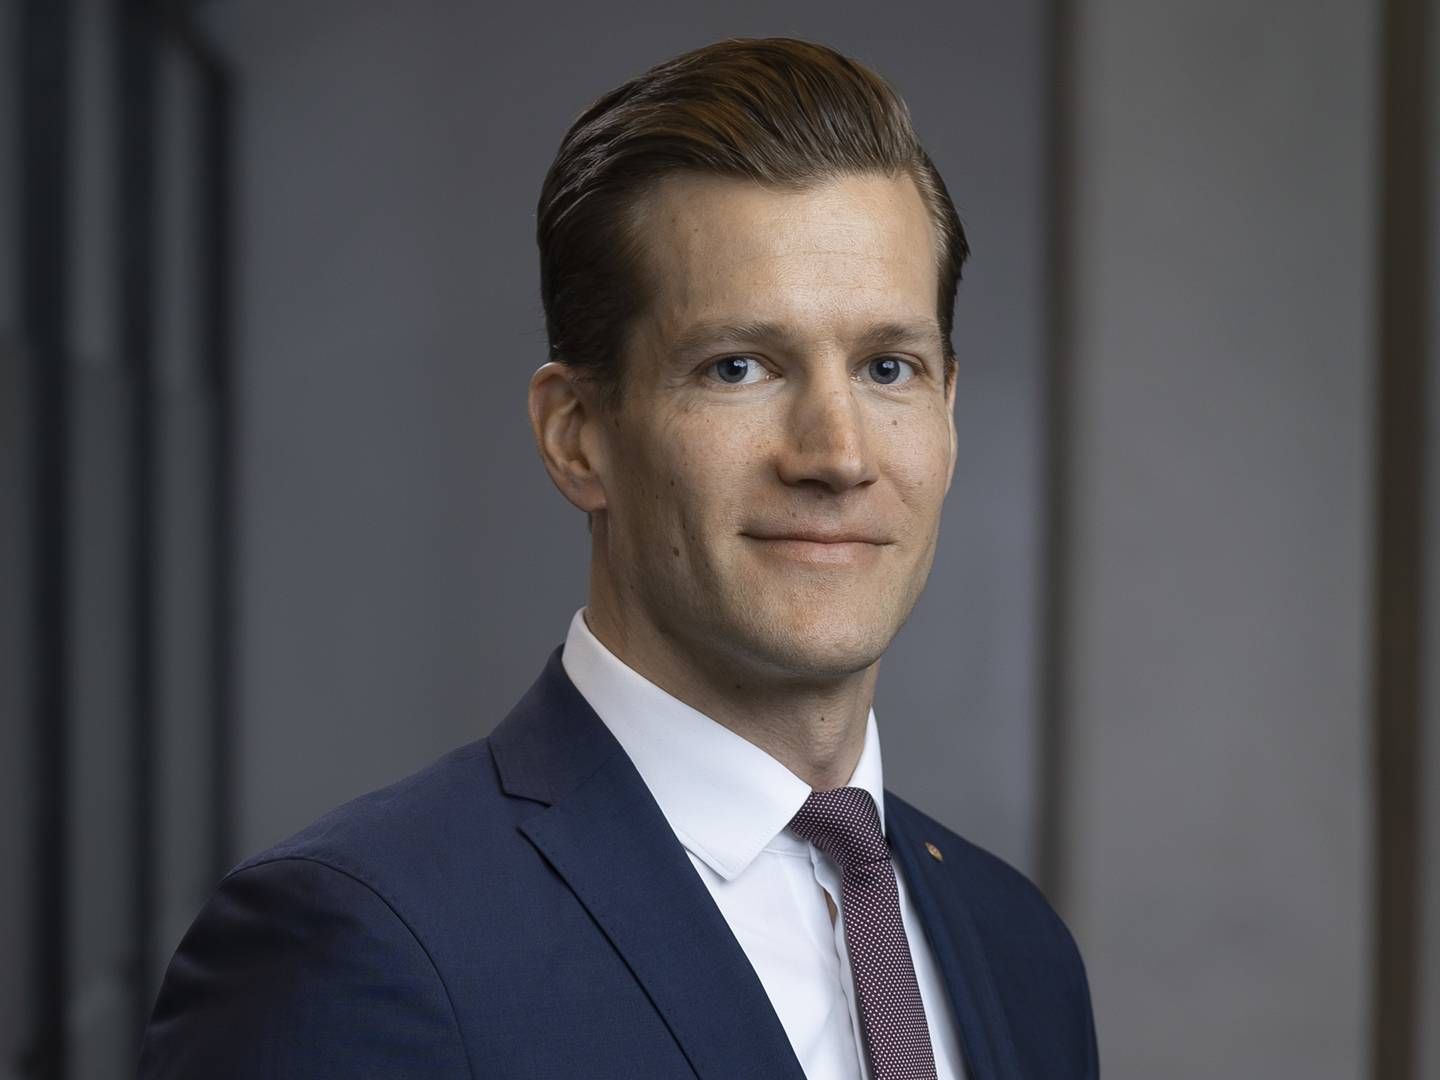 Mandatum Asset Management’s CEO Lauri Vaittinen. | Photo: Mandatum PR.